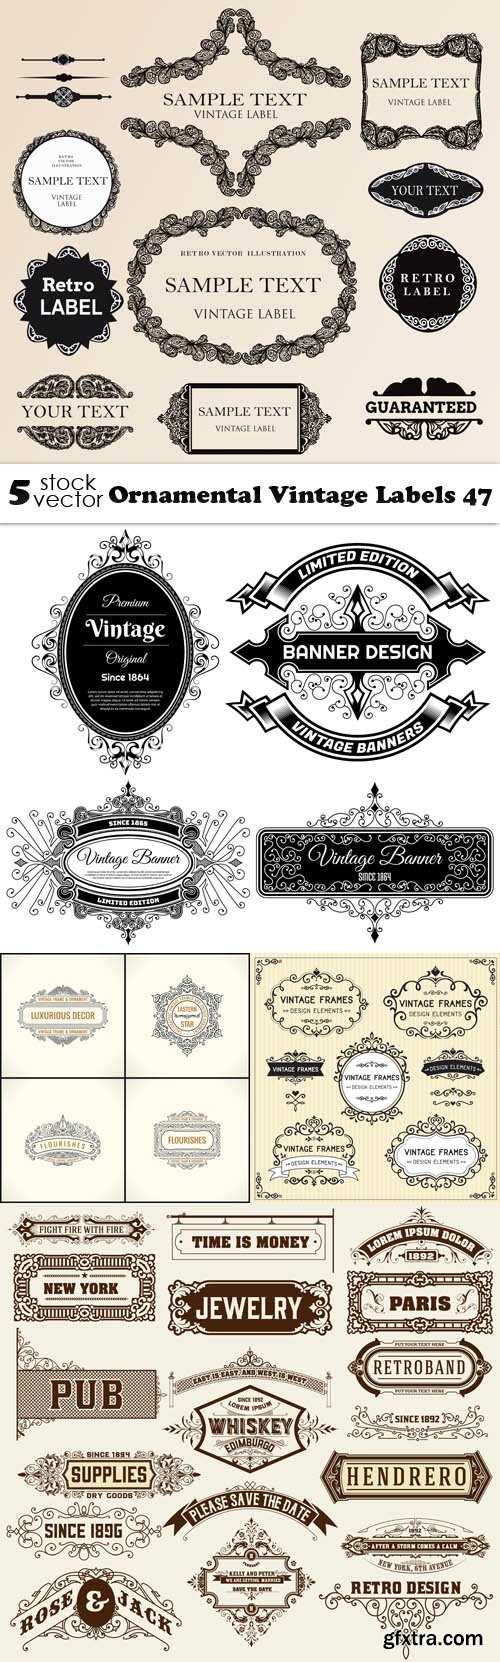 Vectors - Ornamental Vintage Labels 47